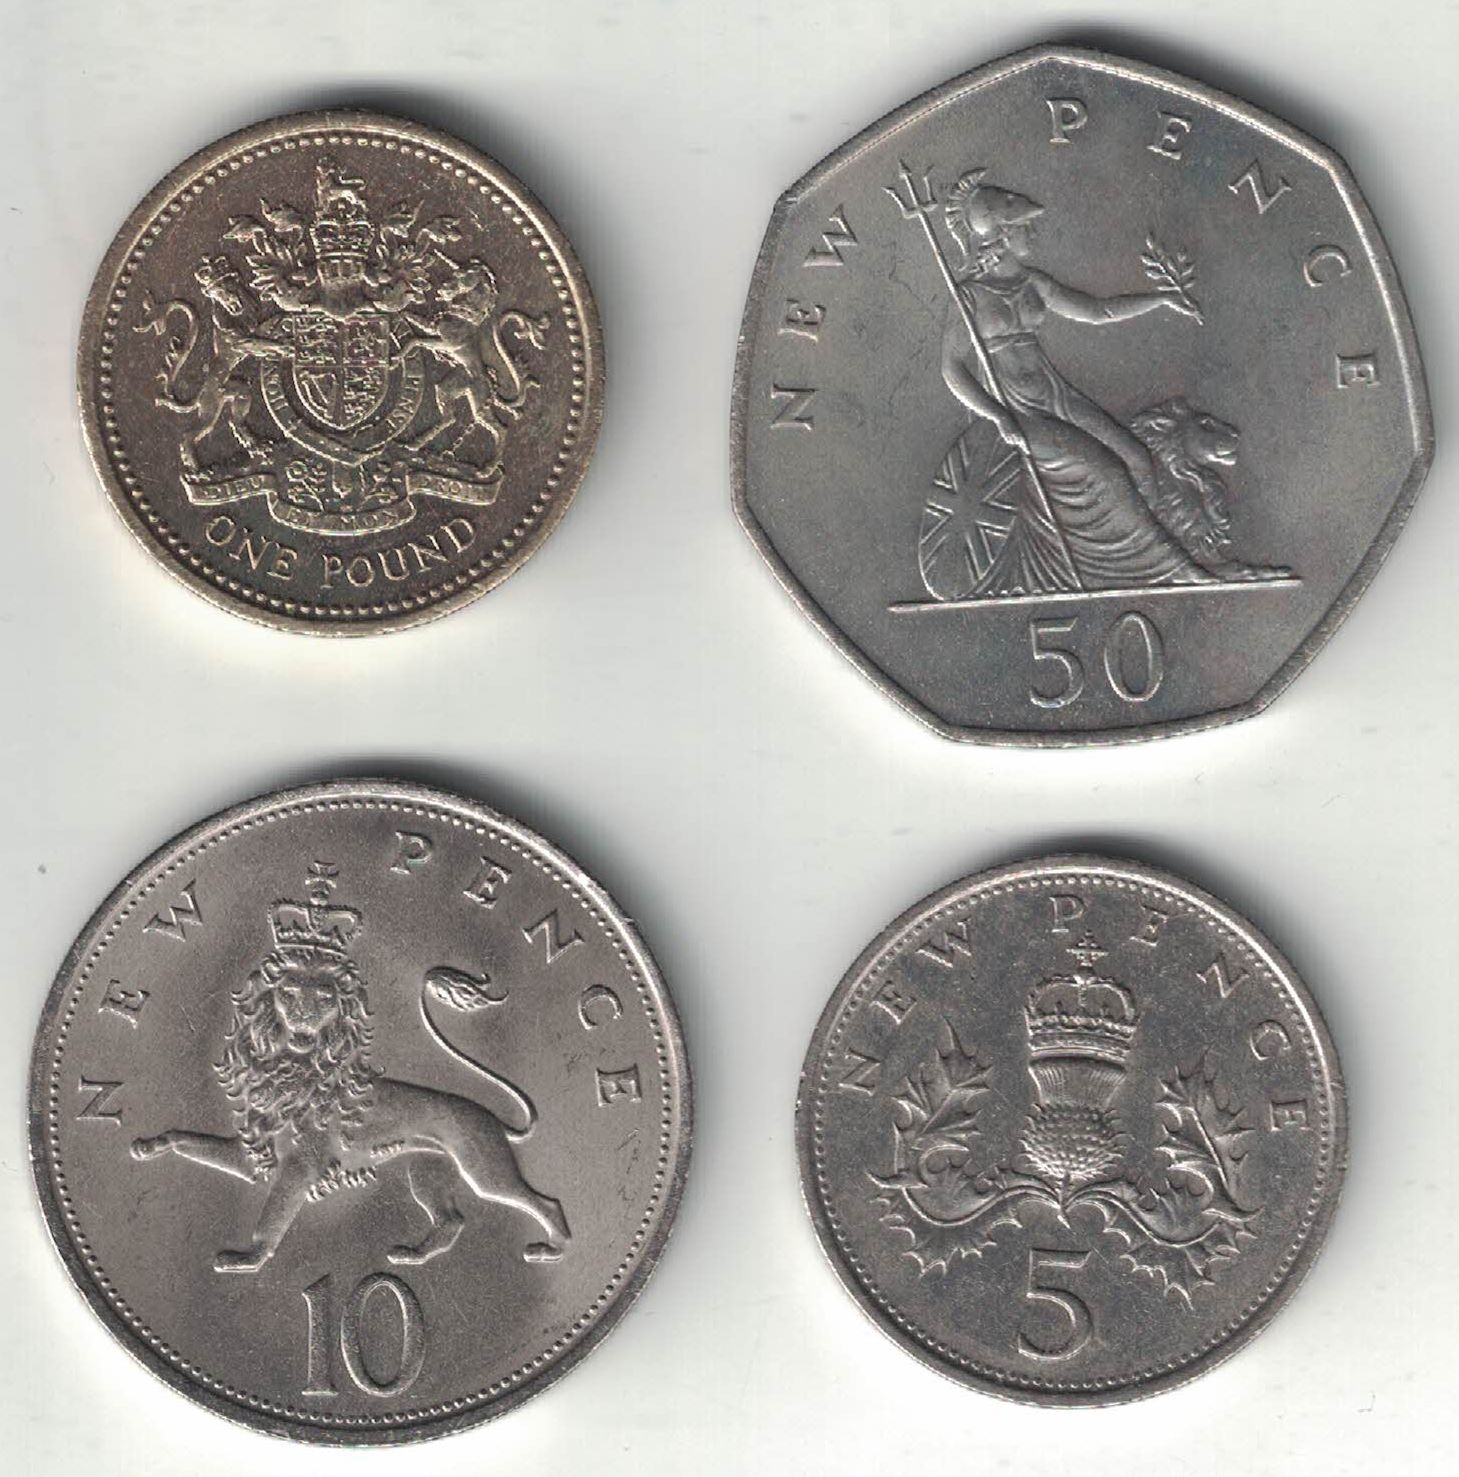 Old British Pound Coins